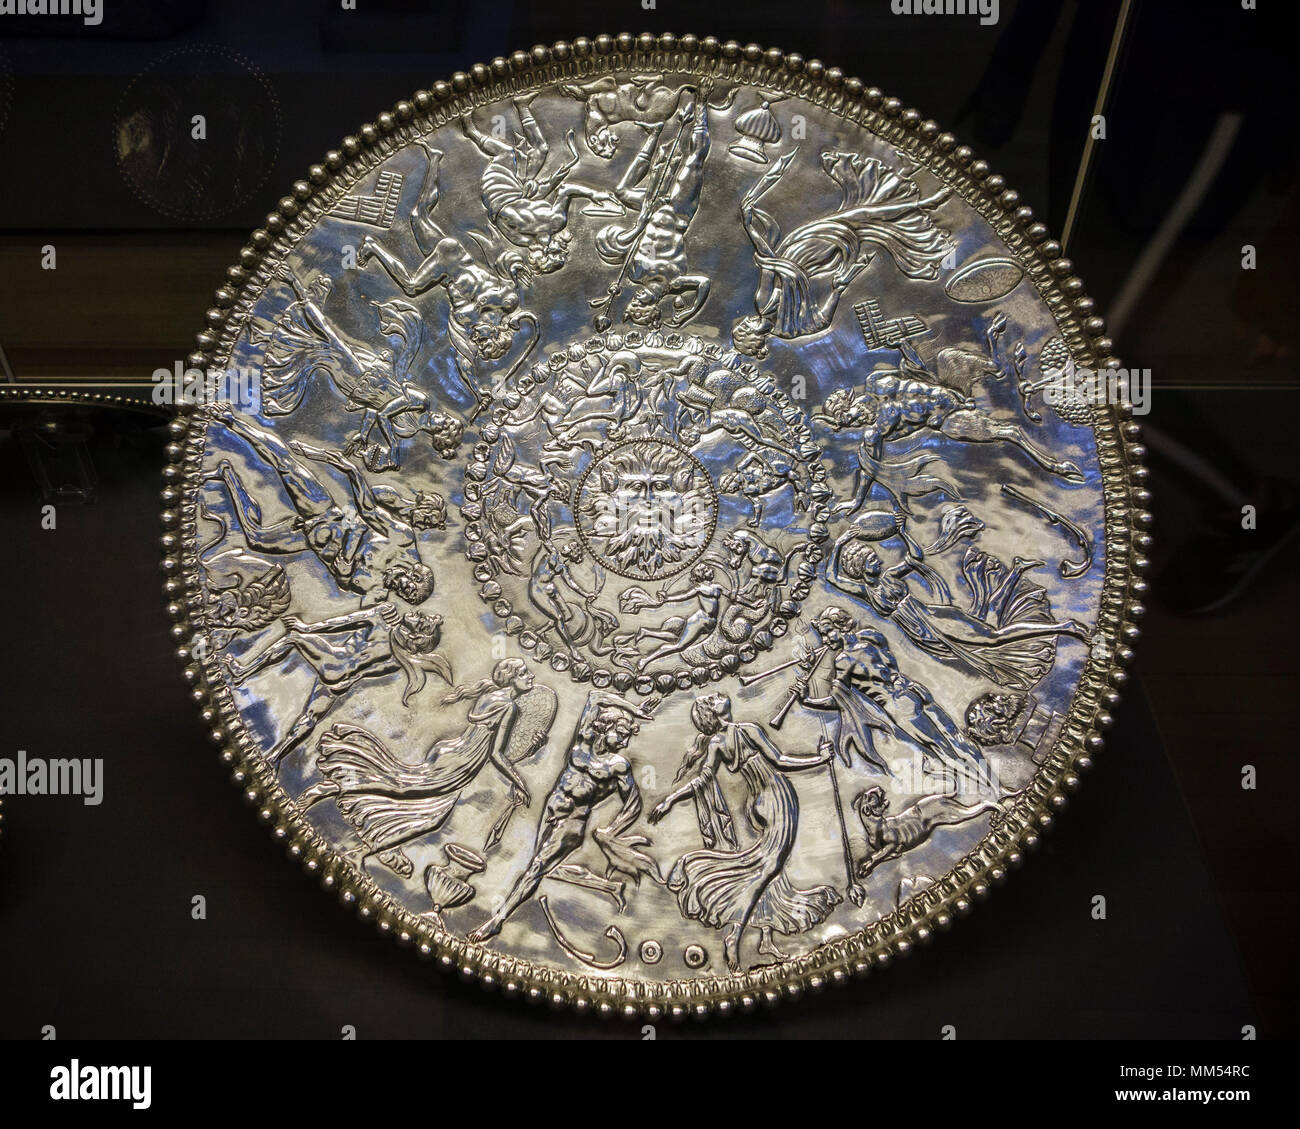 Londres. Inglaterra. Museo Británico. La Mildenhall gran plato, aka Neptuno o Oceanus plato, es un siglo IV D.C. Báquica Romana bandeja de plata, y es el Foto de stock